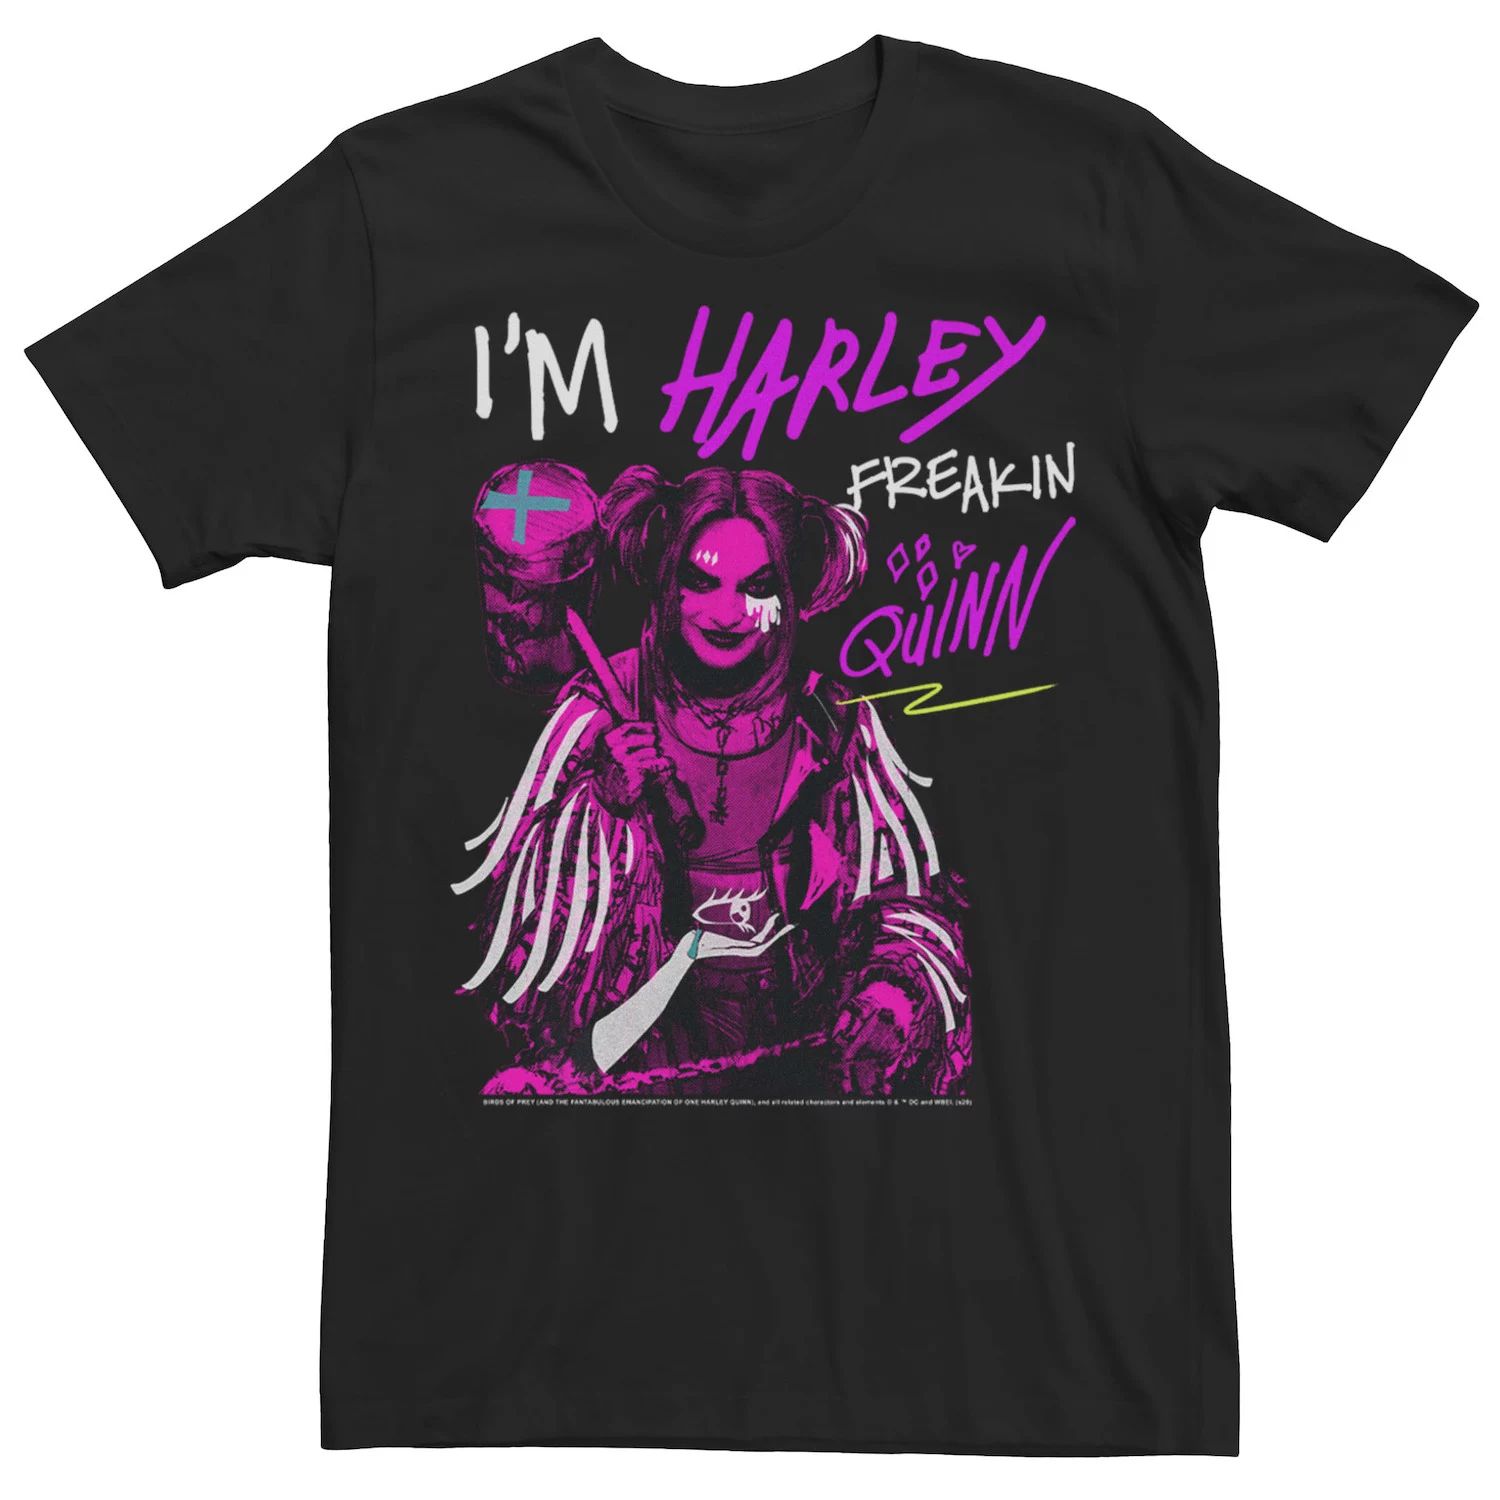 Мужская футболка Harley Quinn: Birds of Prey I Am Harley Freakin Quinn Licensed Character мужская майка birds of prey i m harley freakin quinn dc comics